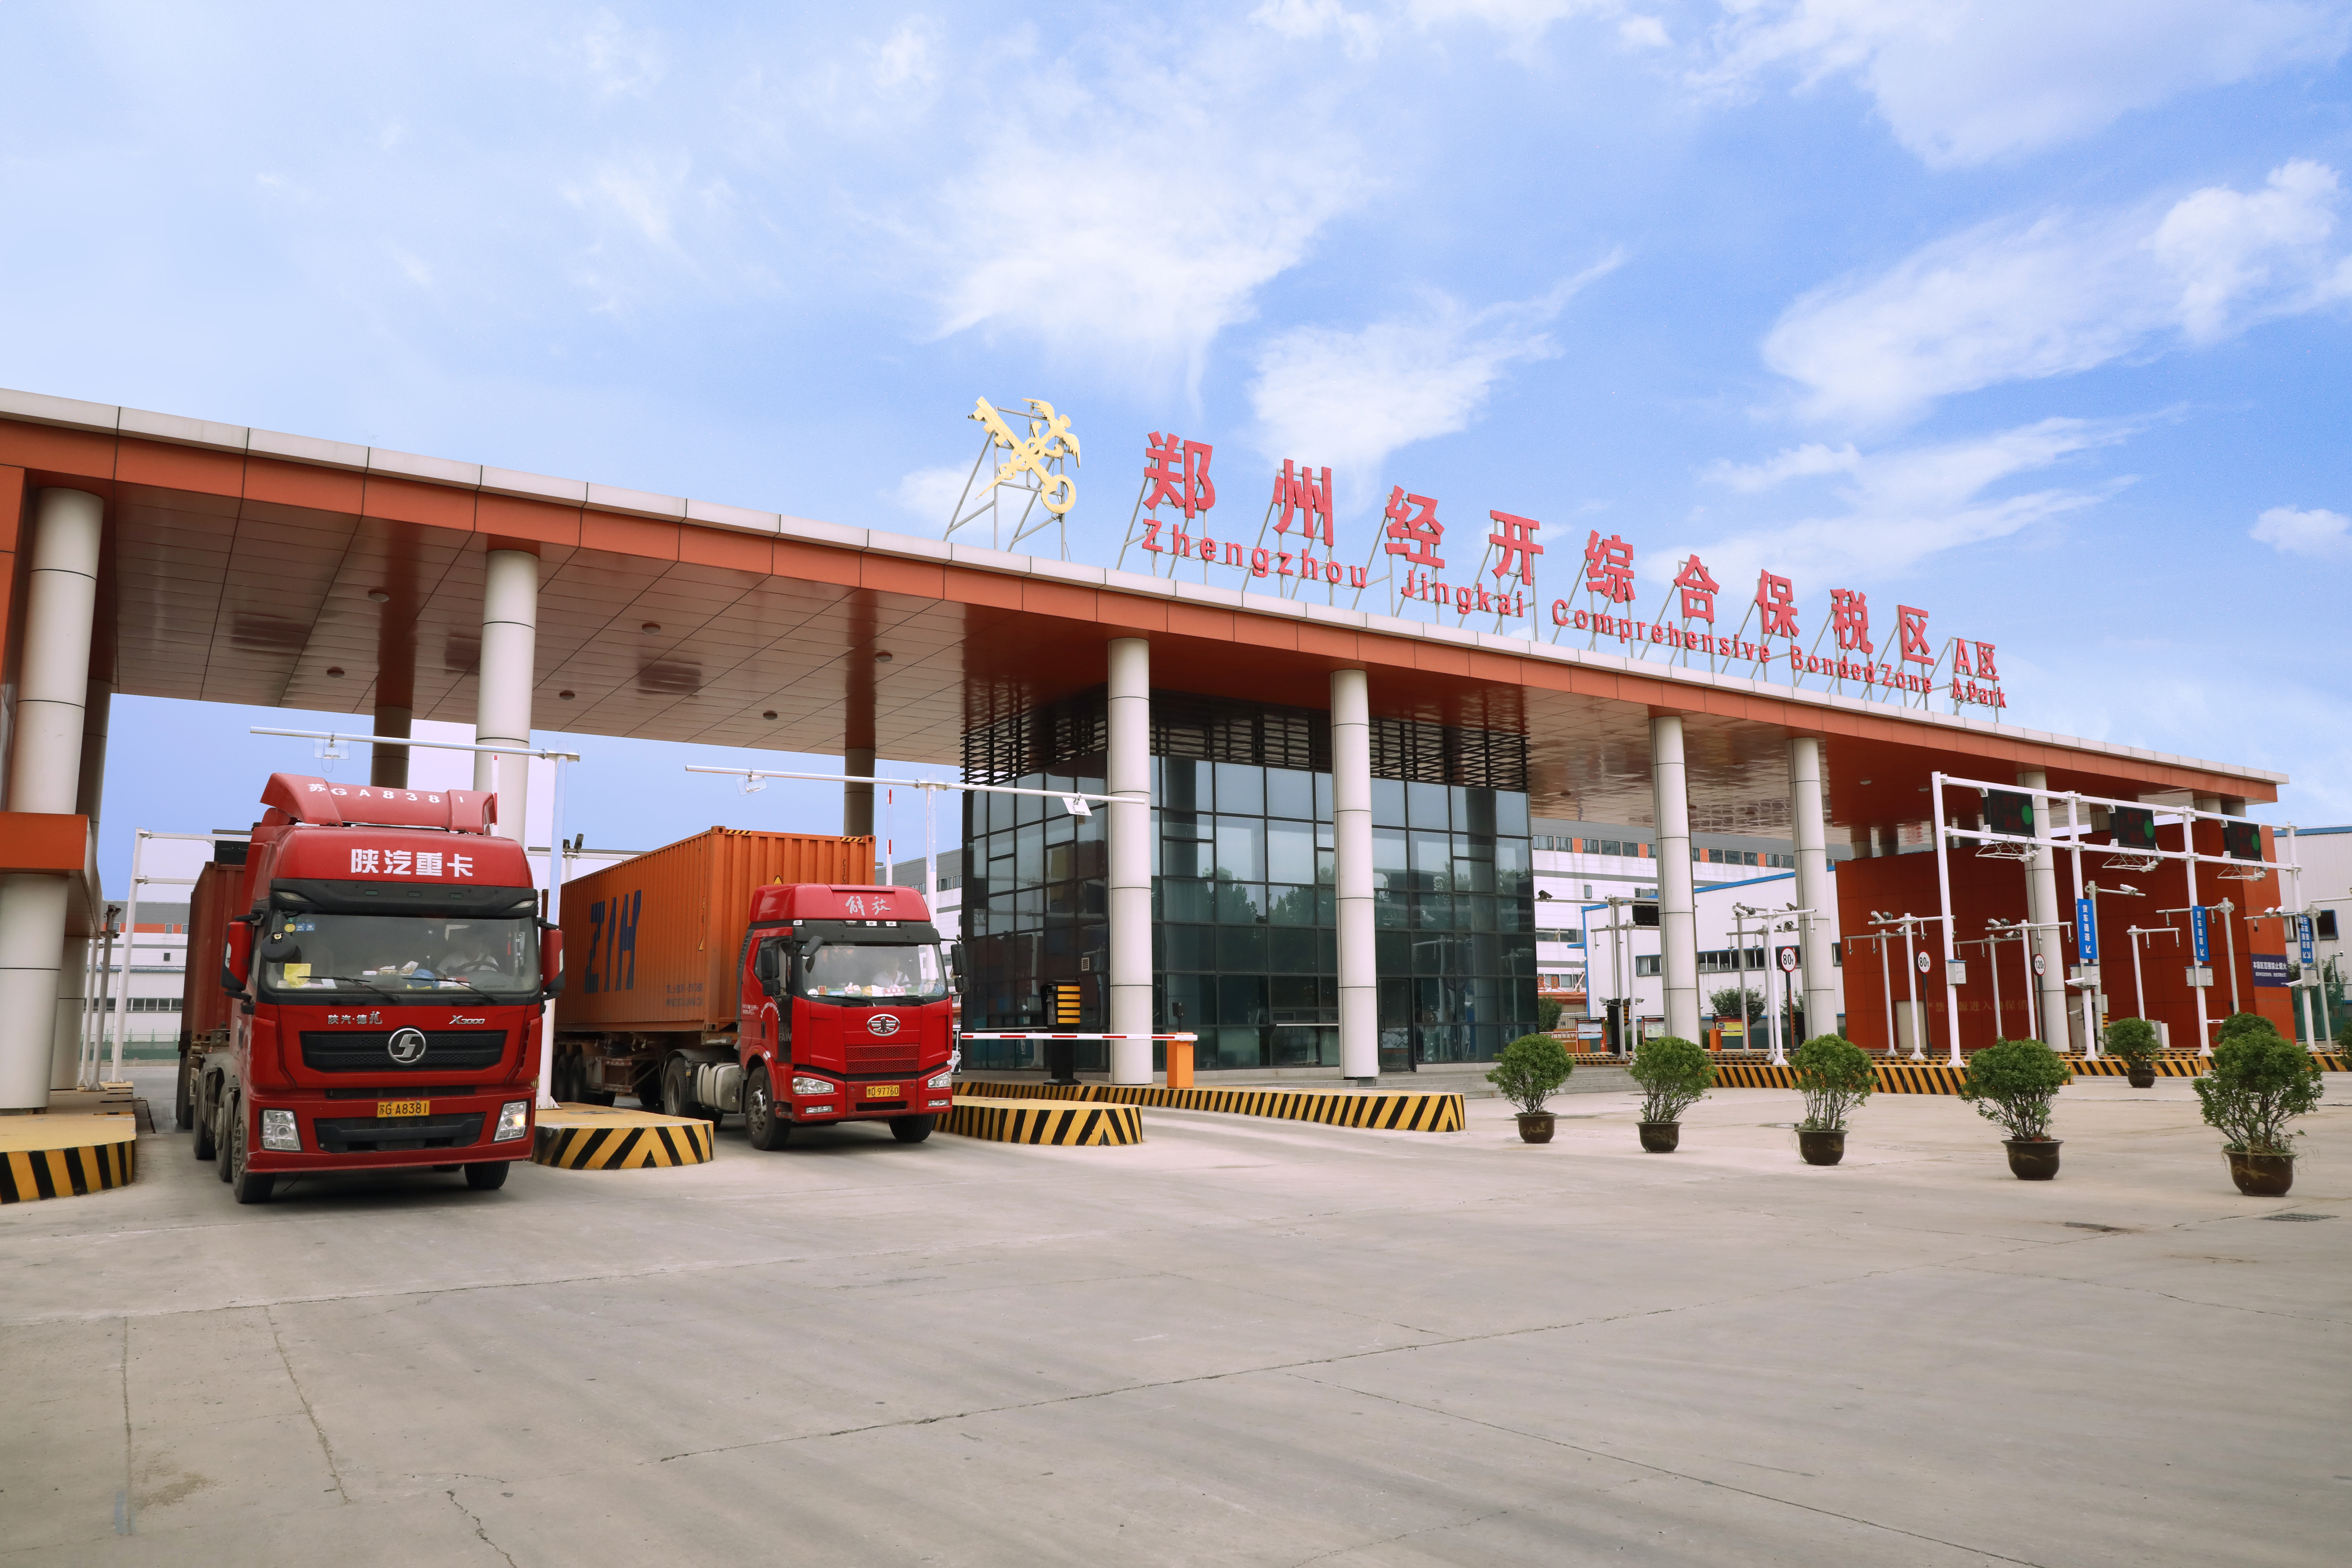 Henan Bonded Logistics Center's cross-border e-commence value up over 70% in Q1